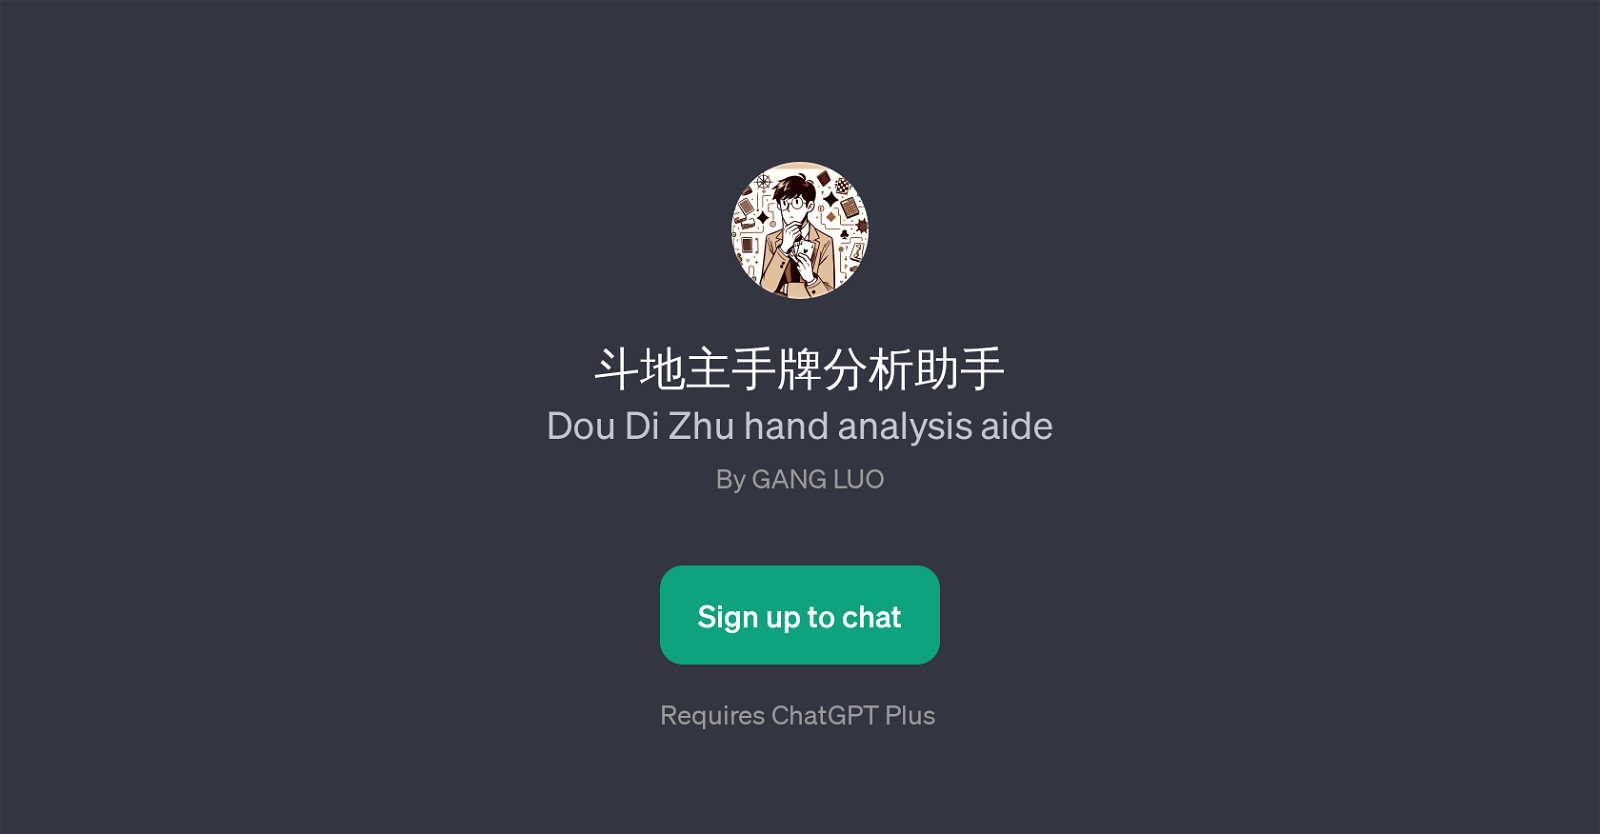 (Dou Di Zhu hand analysis aide) website